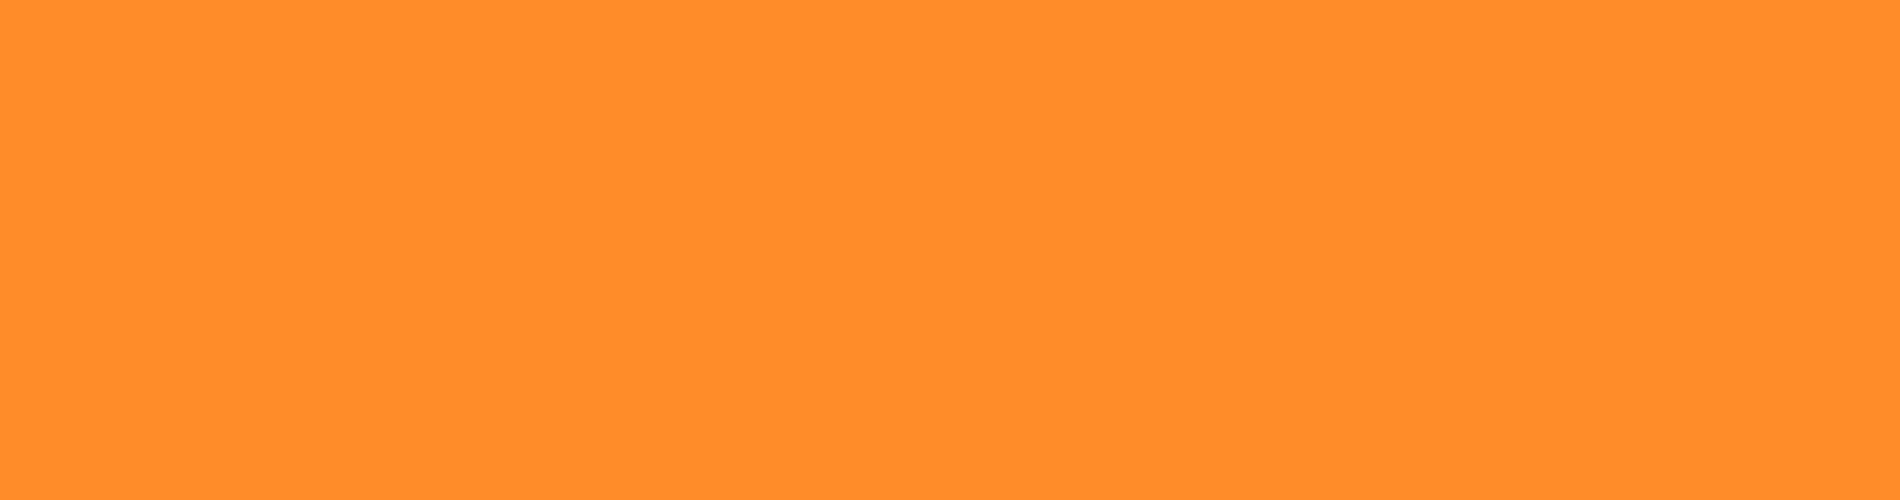 orange platta för att symbolisera en vecka fri från våld